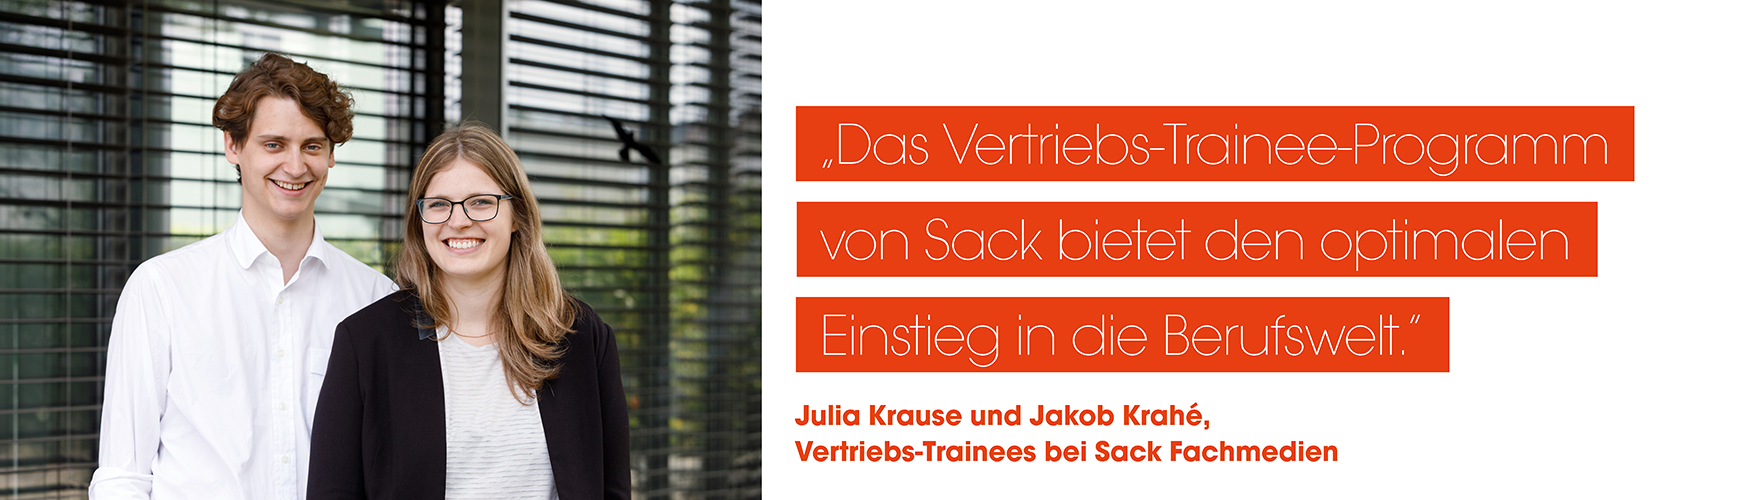 Julia Krause und Jakob Krahé, zwei ehemalige Vertriebstrainees bei Sack Fachmedien